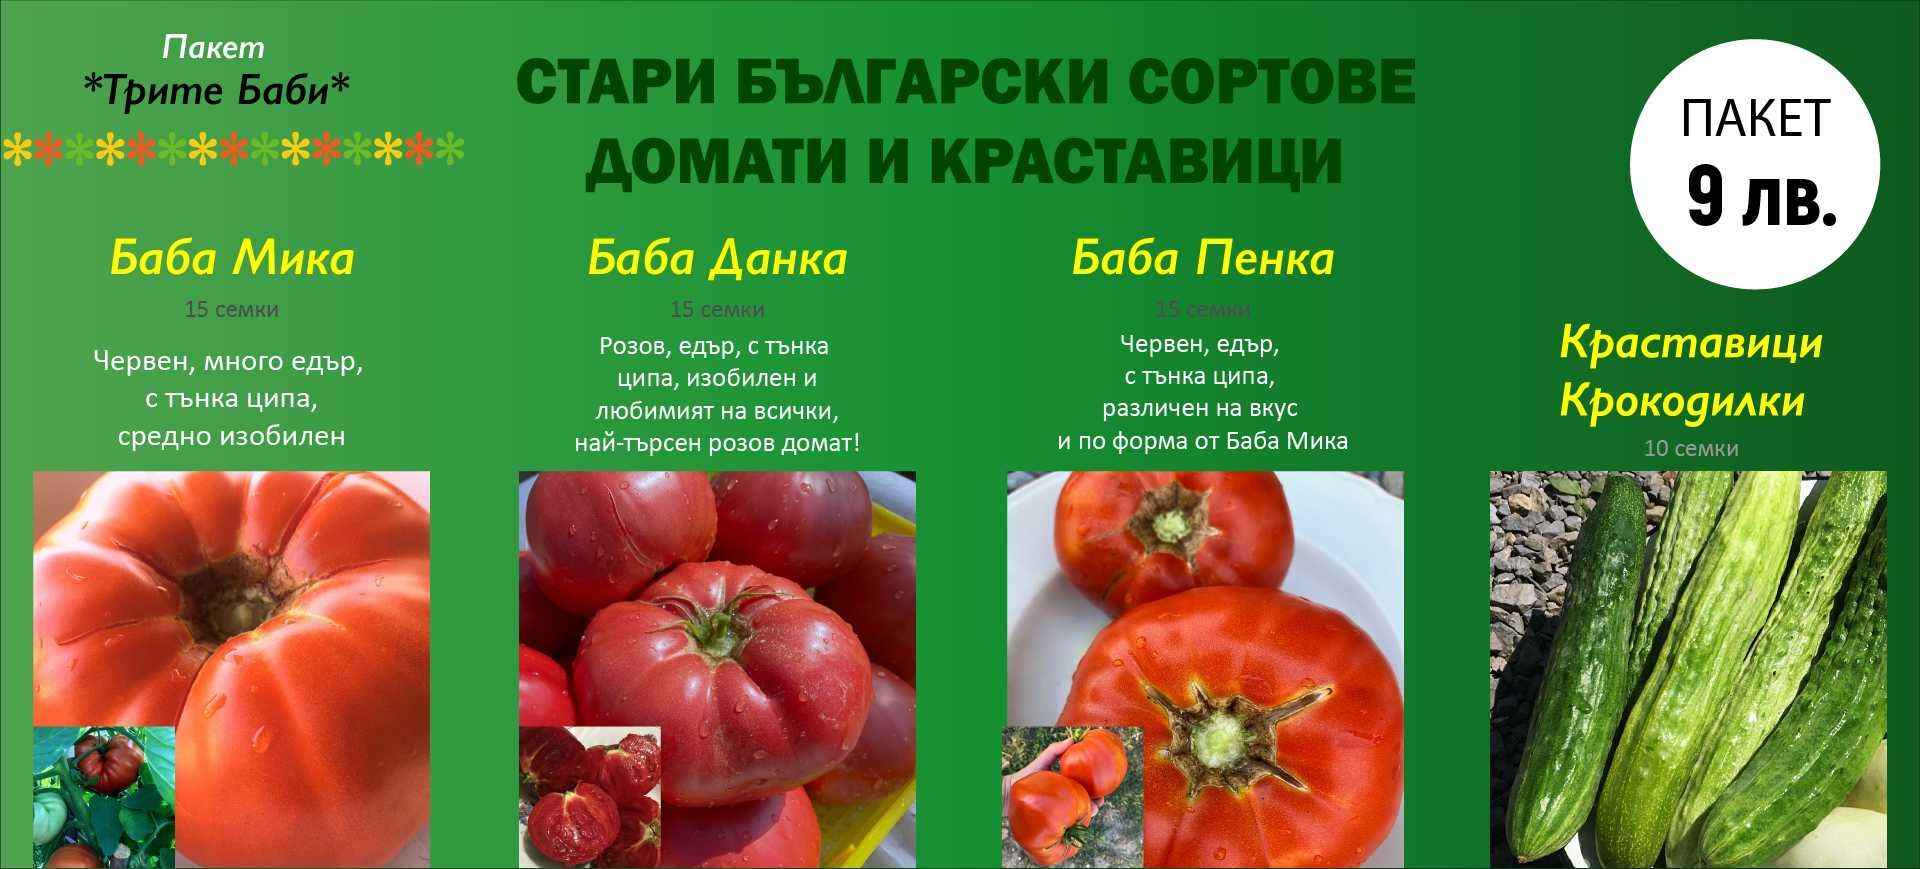 Семена Стари Български Сортове Домати и Краставици